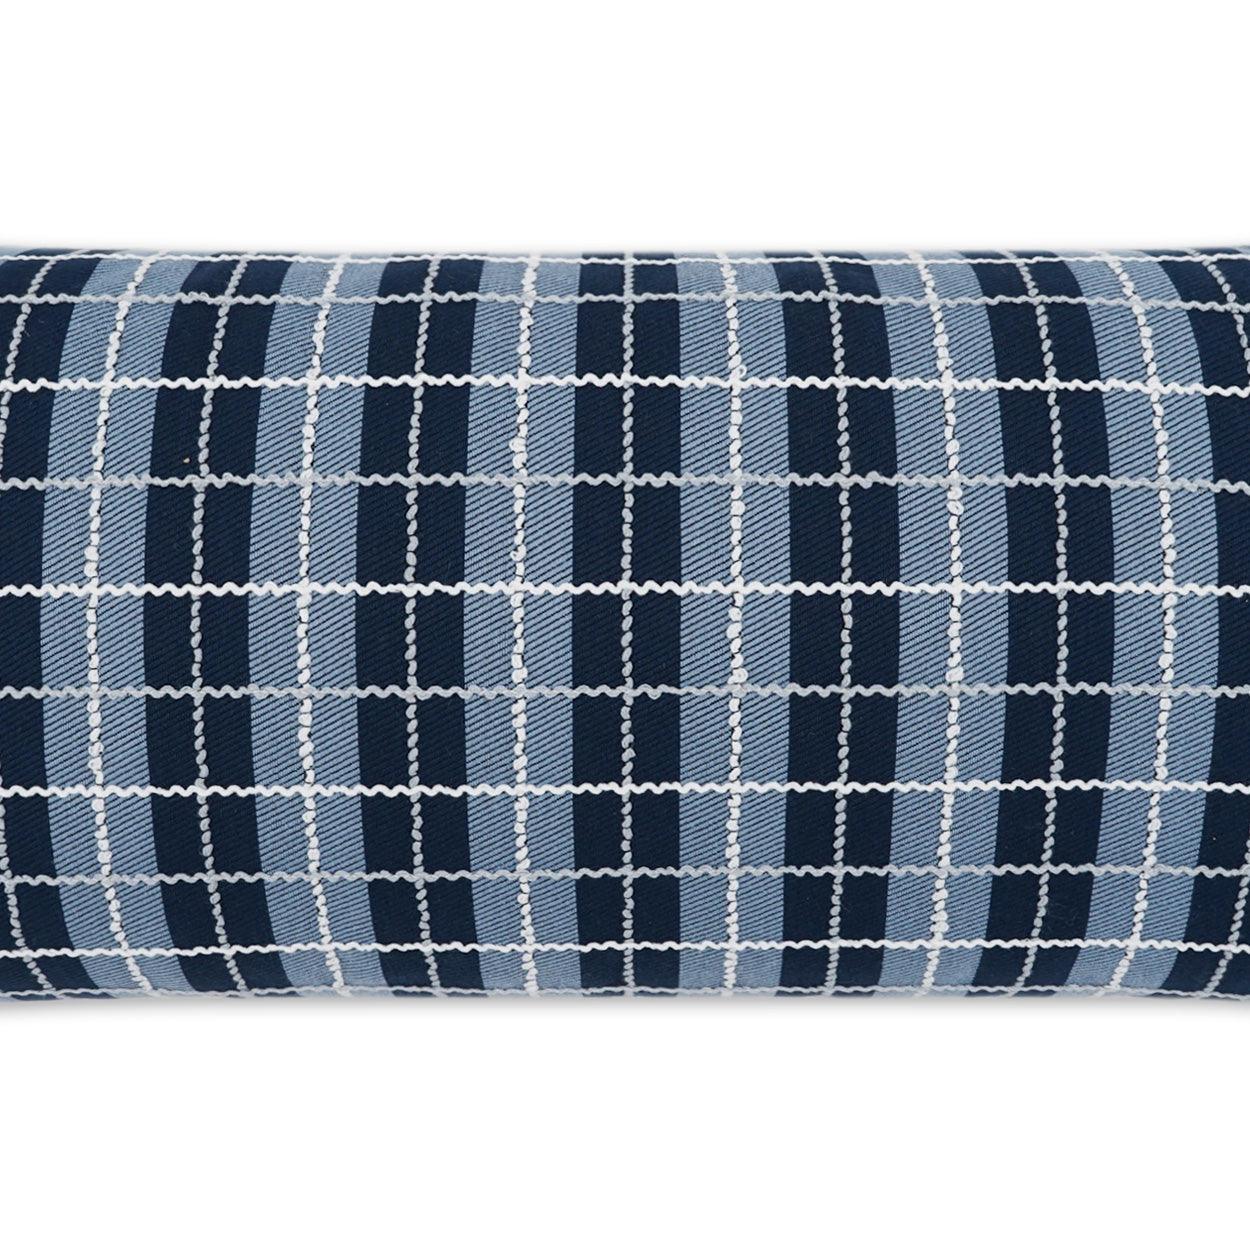 LOOMLAN Outdoor - Outdoor Ando Lumbar Pillow - Azure - Outdoor Pillows